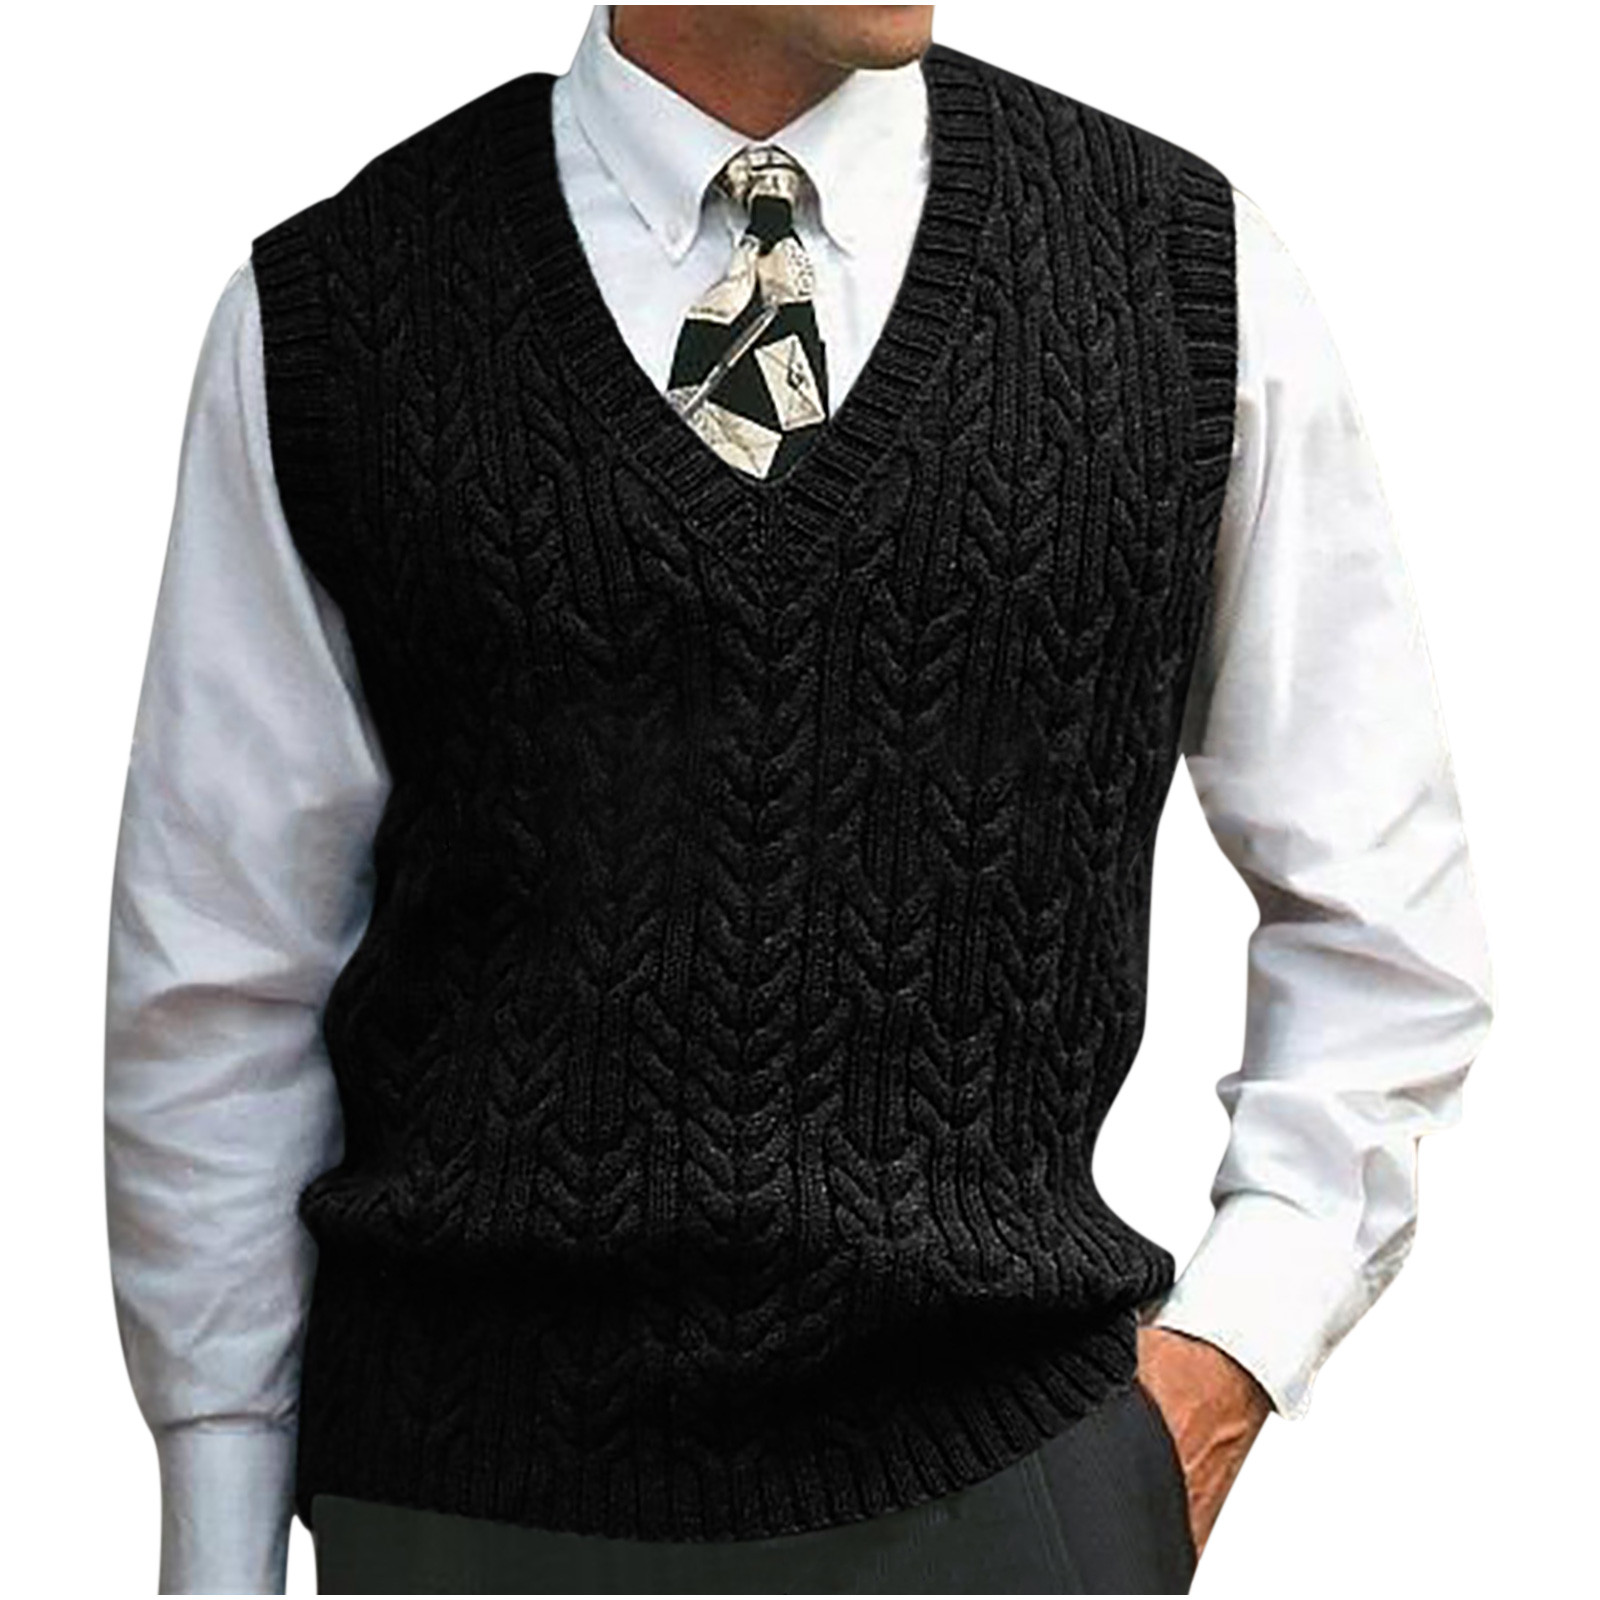 Sweater Vest for Men V-Neck Sweater Wool Sleeveless Pullover ...